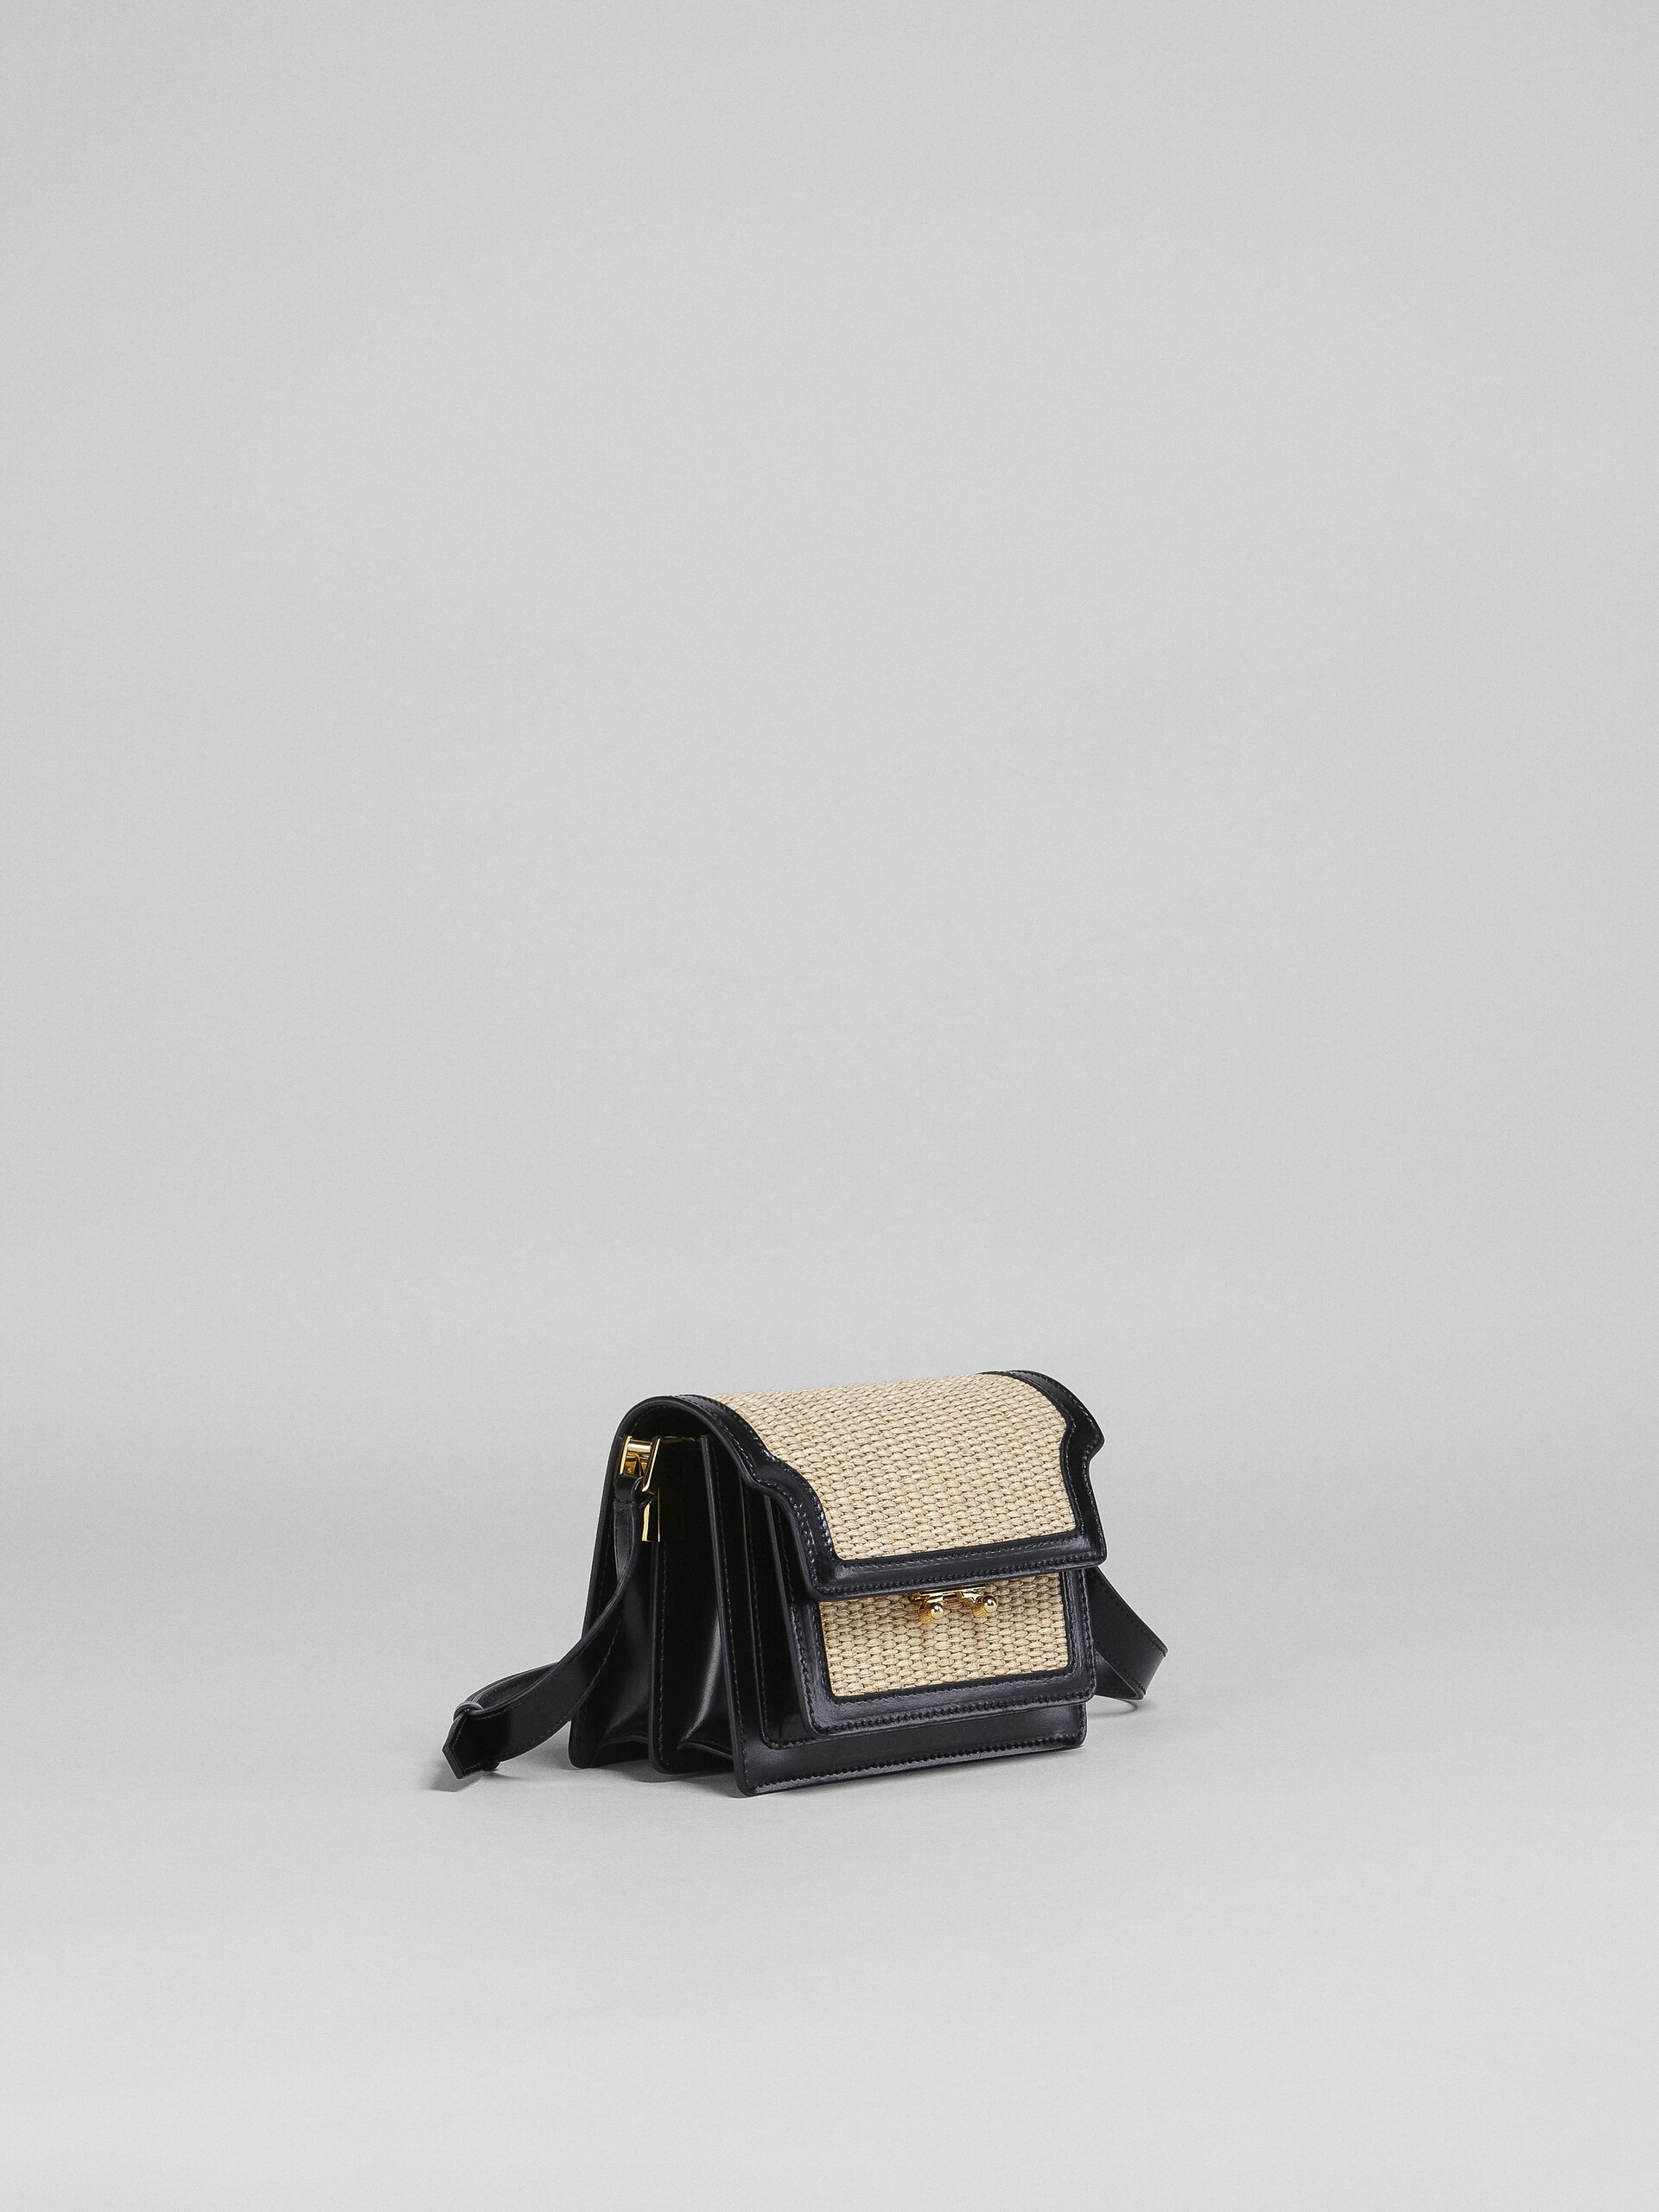 TRUNK SOFT bag mini in pelle nera e rafia - Borse a spalla - Image 6